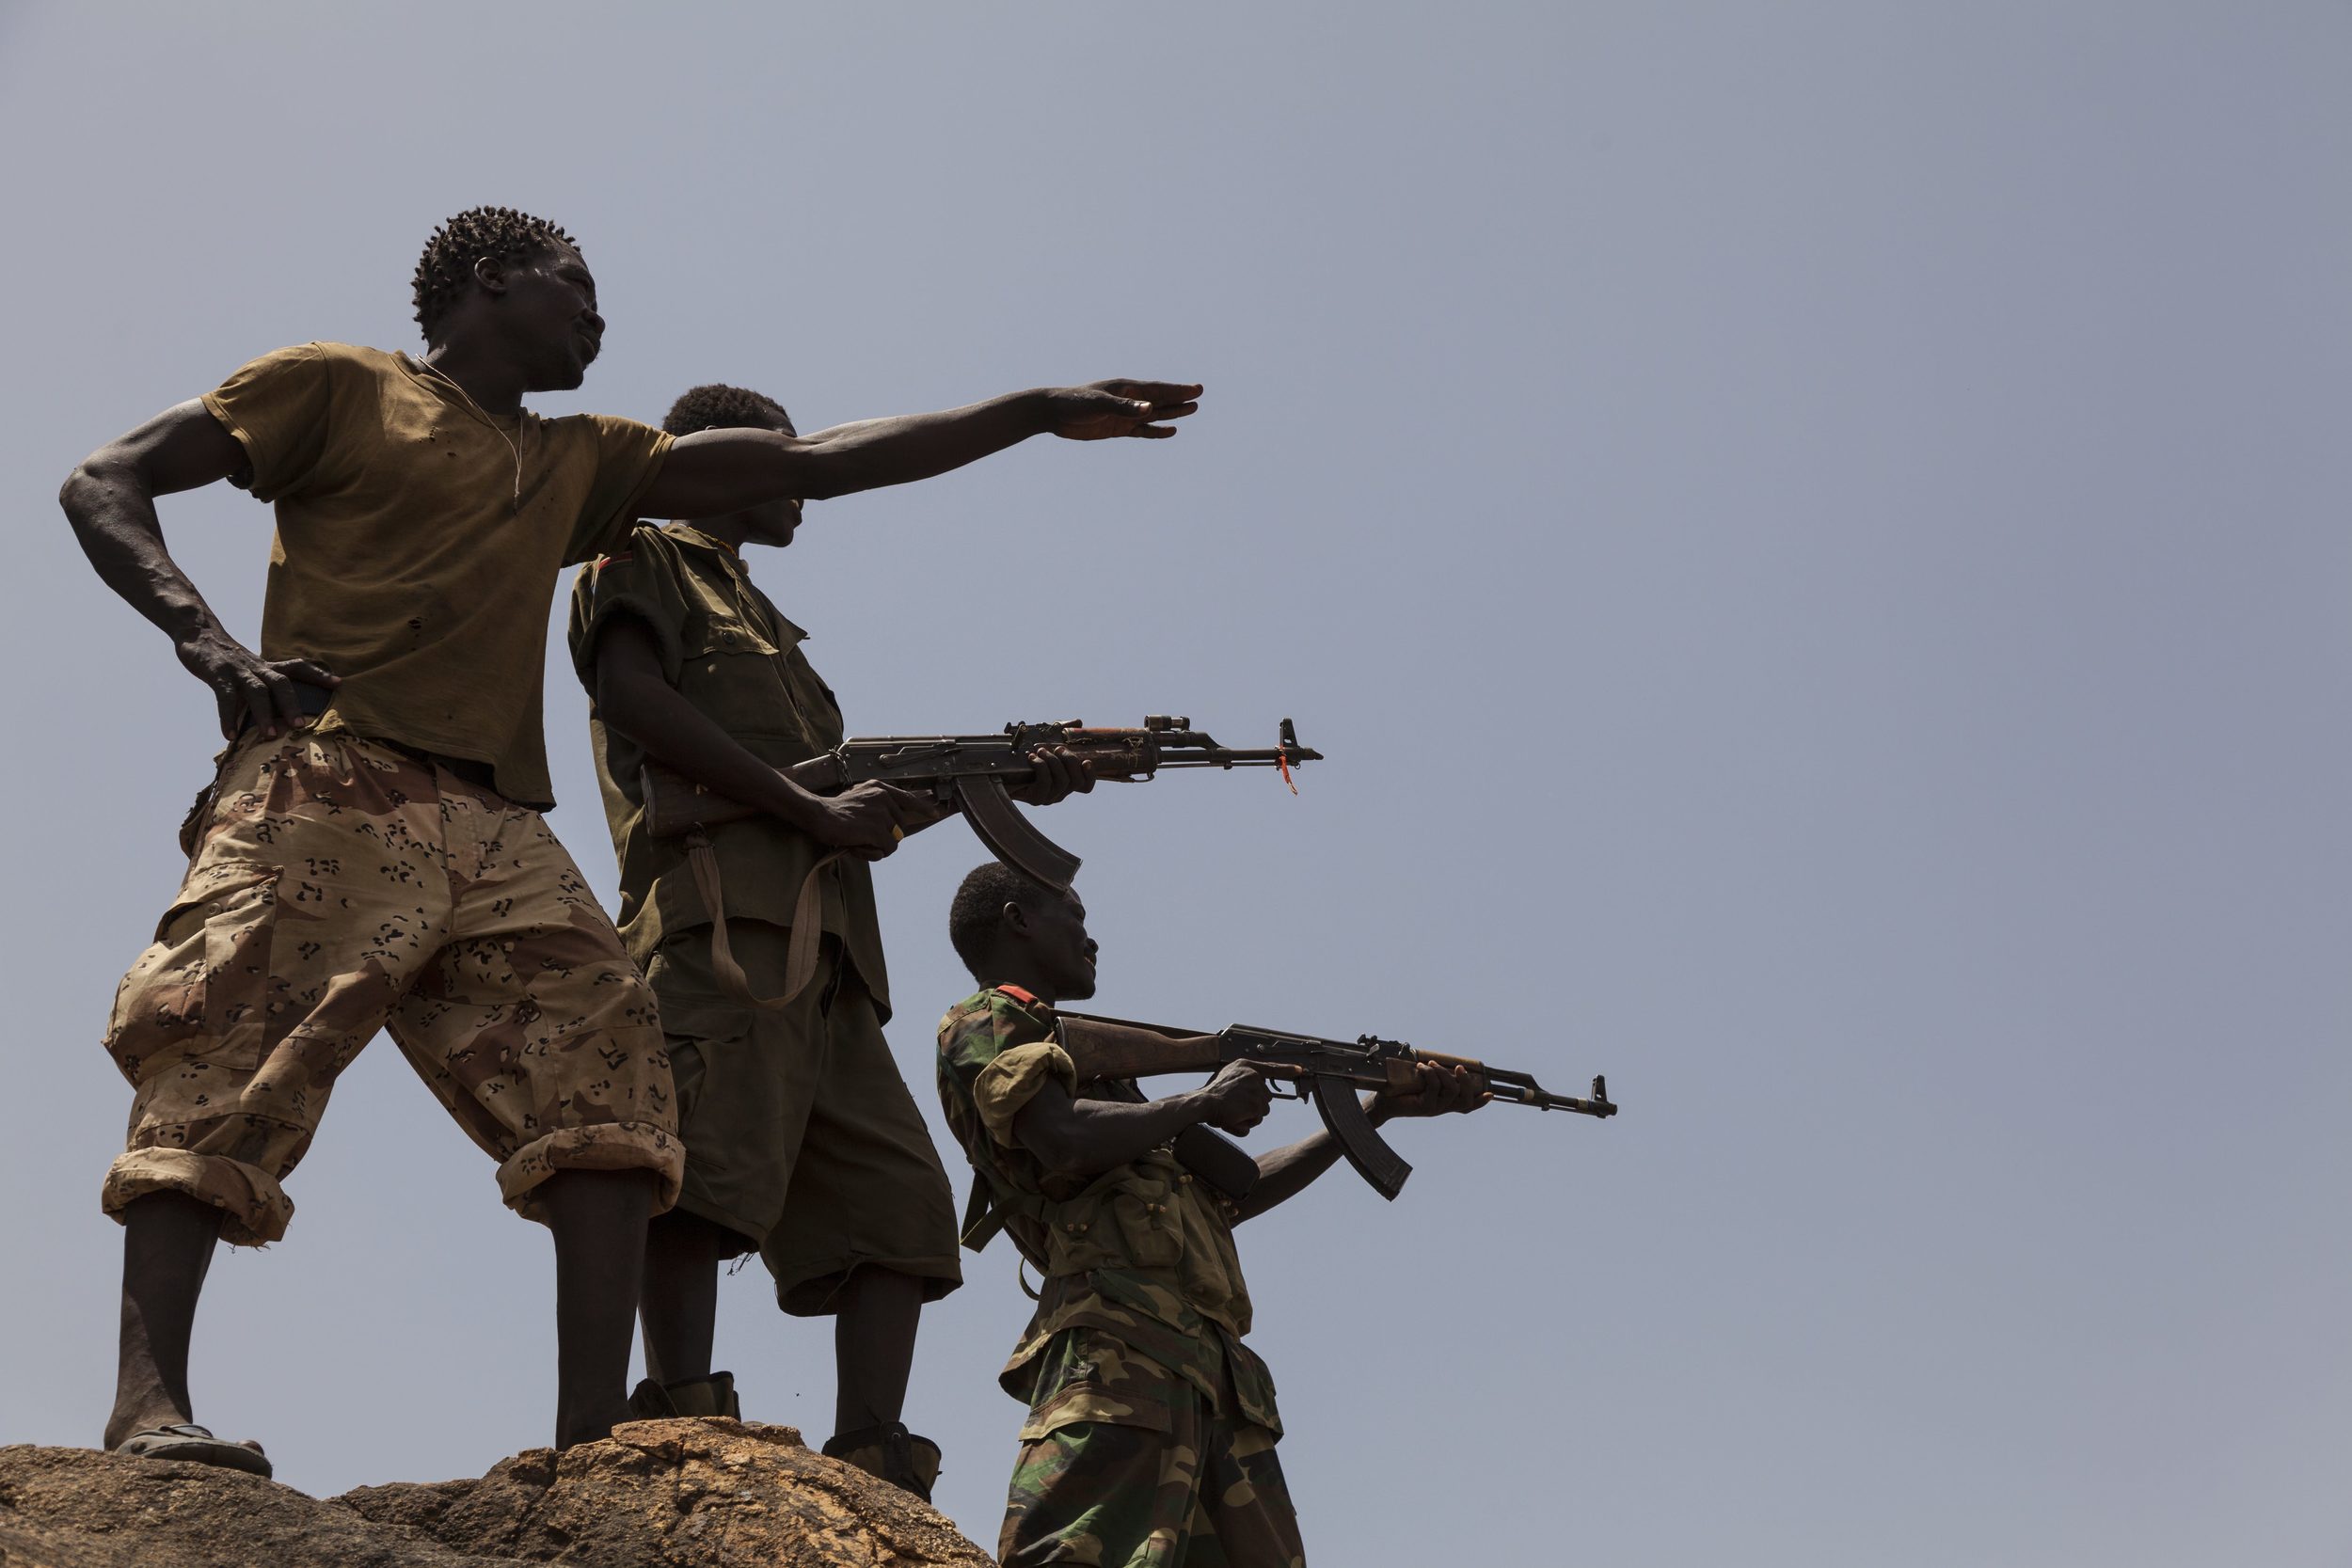 جنود من الجيش الشعبي  لتحرير السودان - قطاع الشمال يشيرون إلى قوات الحكومة السودانية من أعلى جبل في جنوب كردفان، 25 أبريل 2012